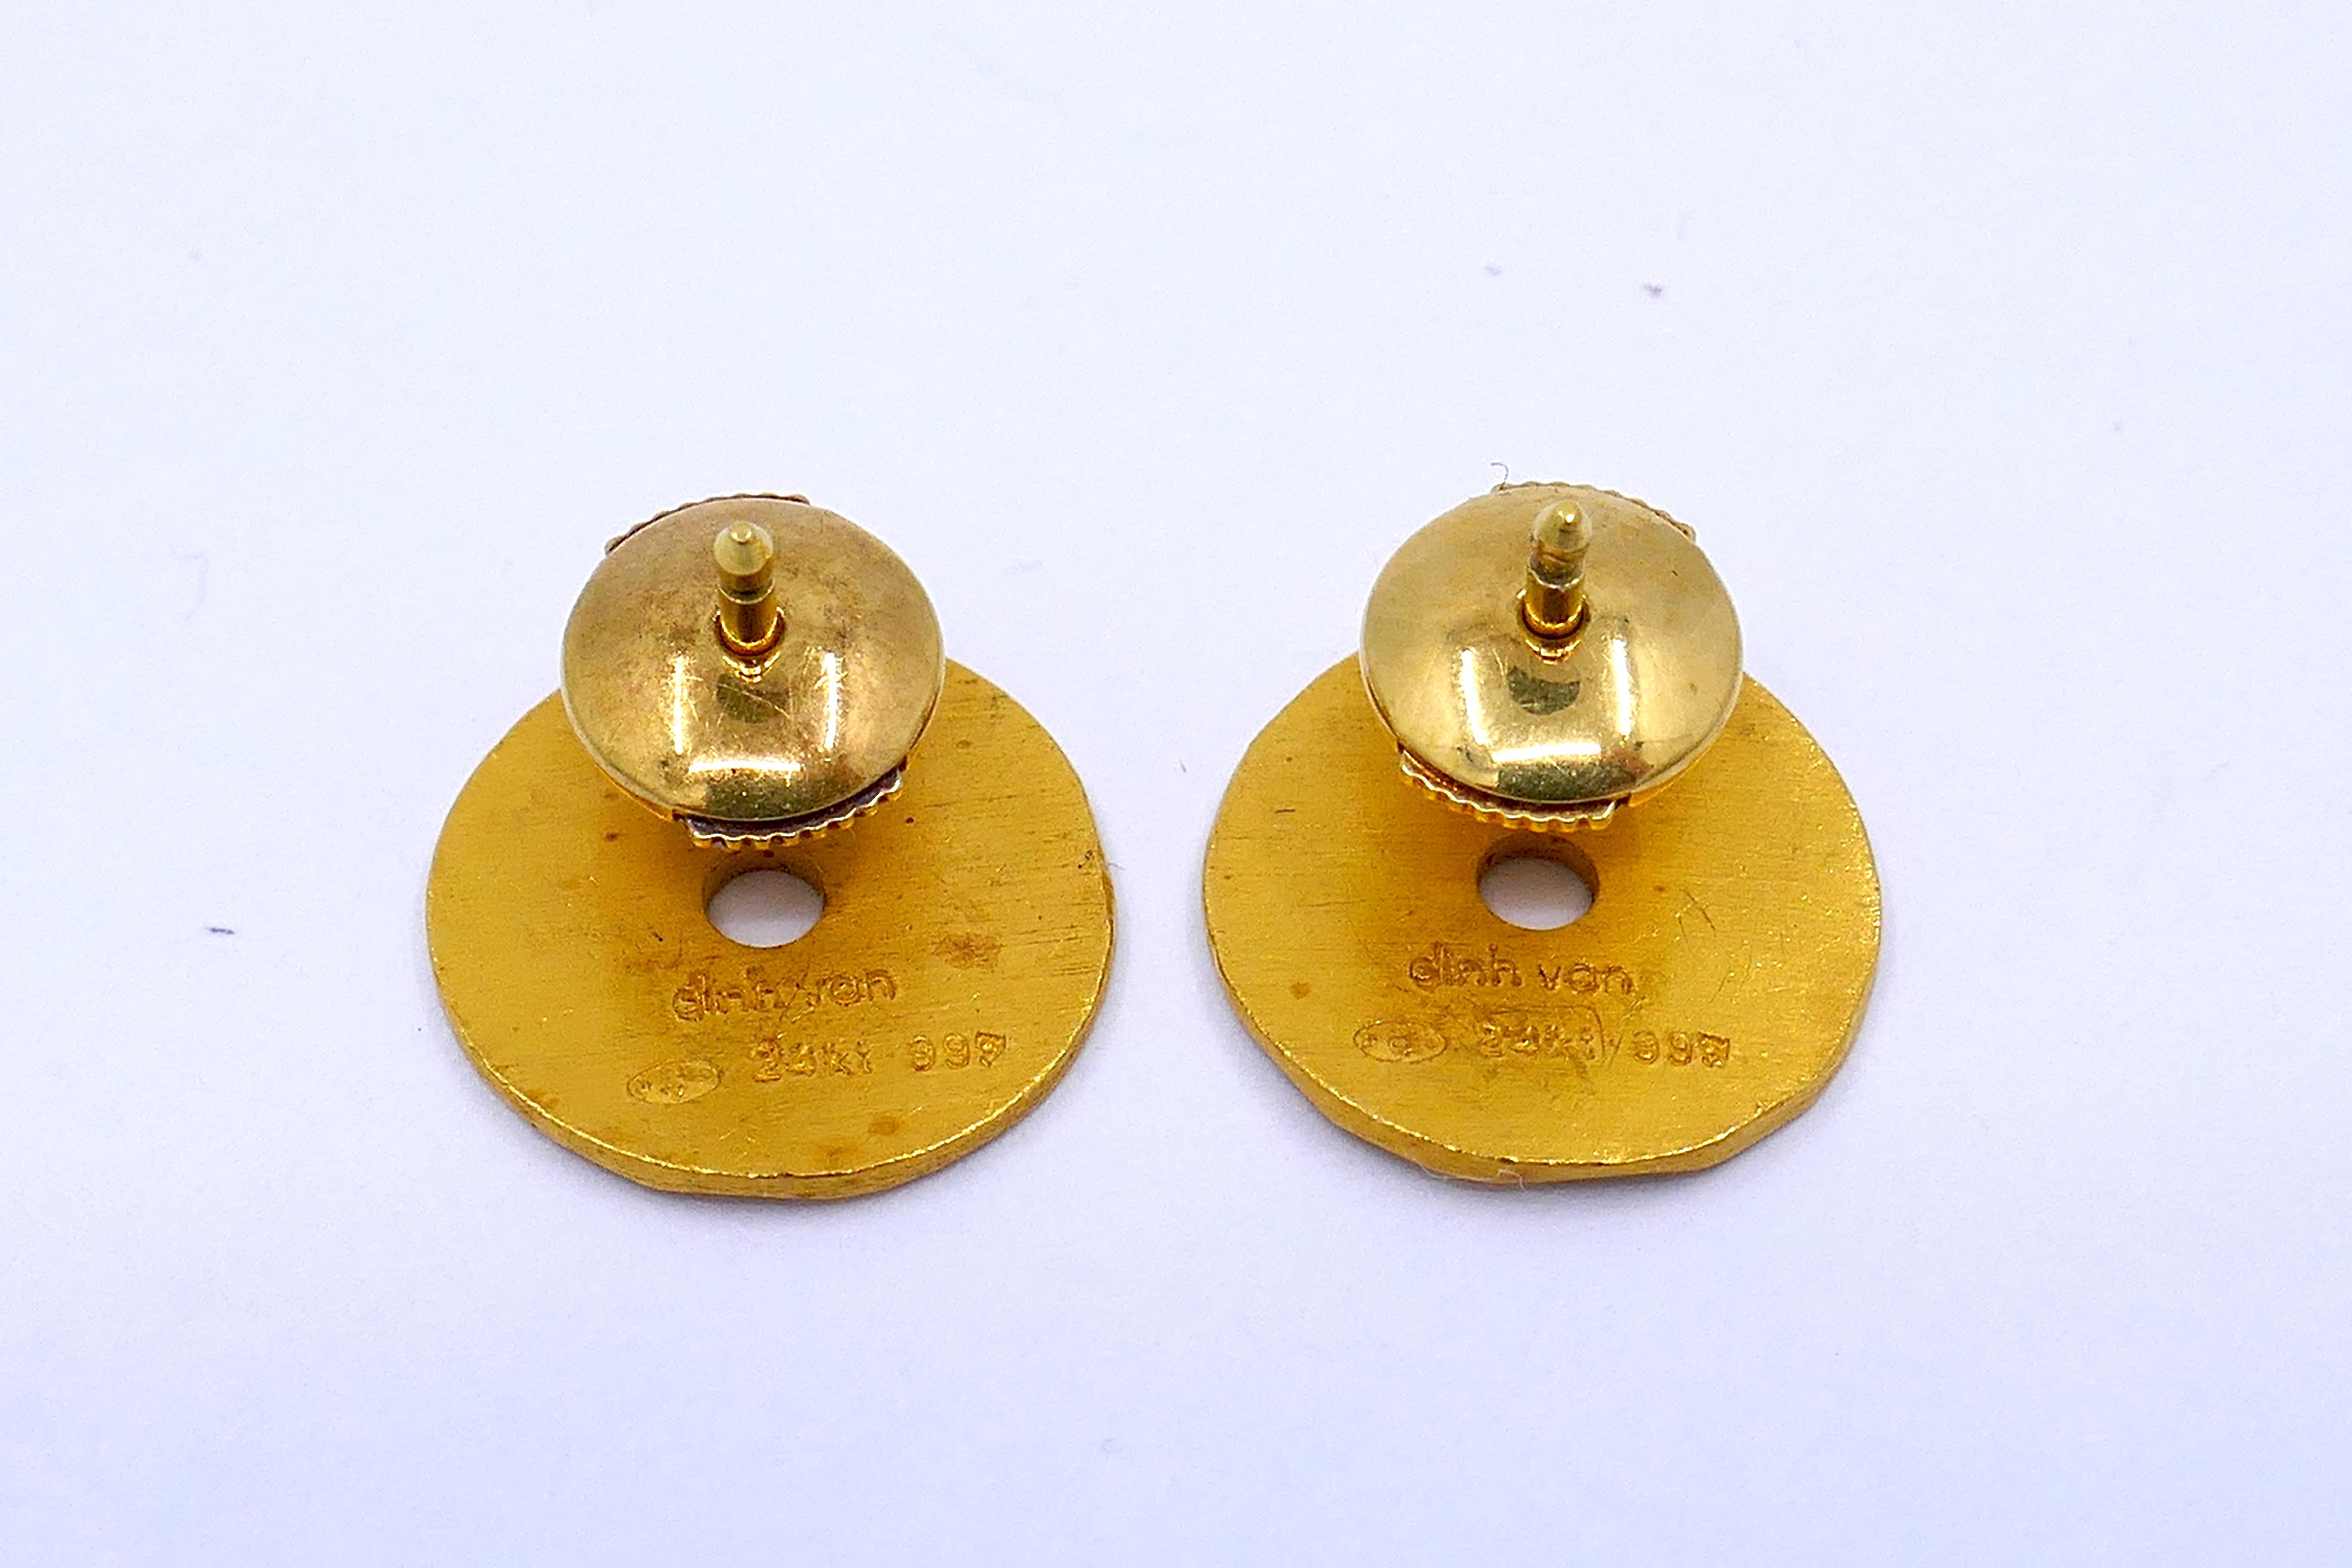 Ces boucles d'oreilles de Jean Dinh Van sont synonymes d'élégance et de savoir-faire. Réalisées en or martelé 24k, elles sont conçues pour des oreilles percées. Les boucles d'oreilles en forme de cercle de 0,5 pouce, pesant 5 grammes, offrent une